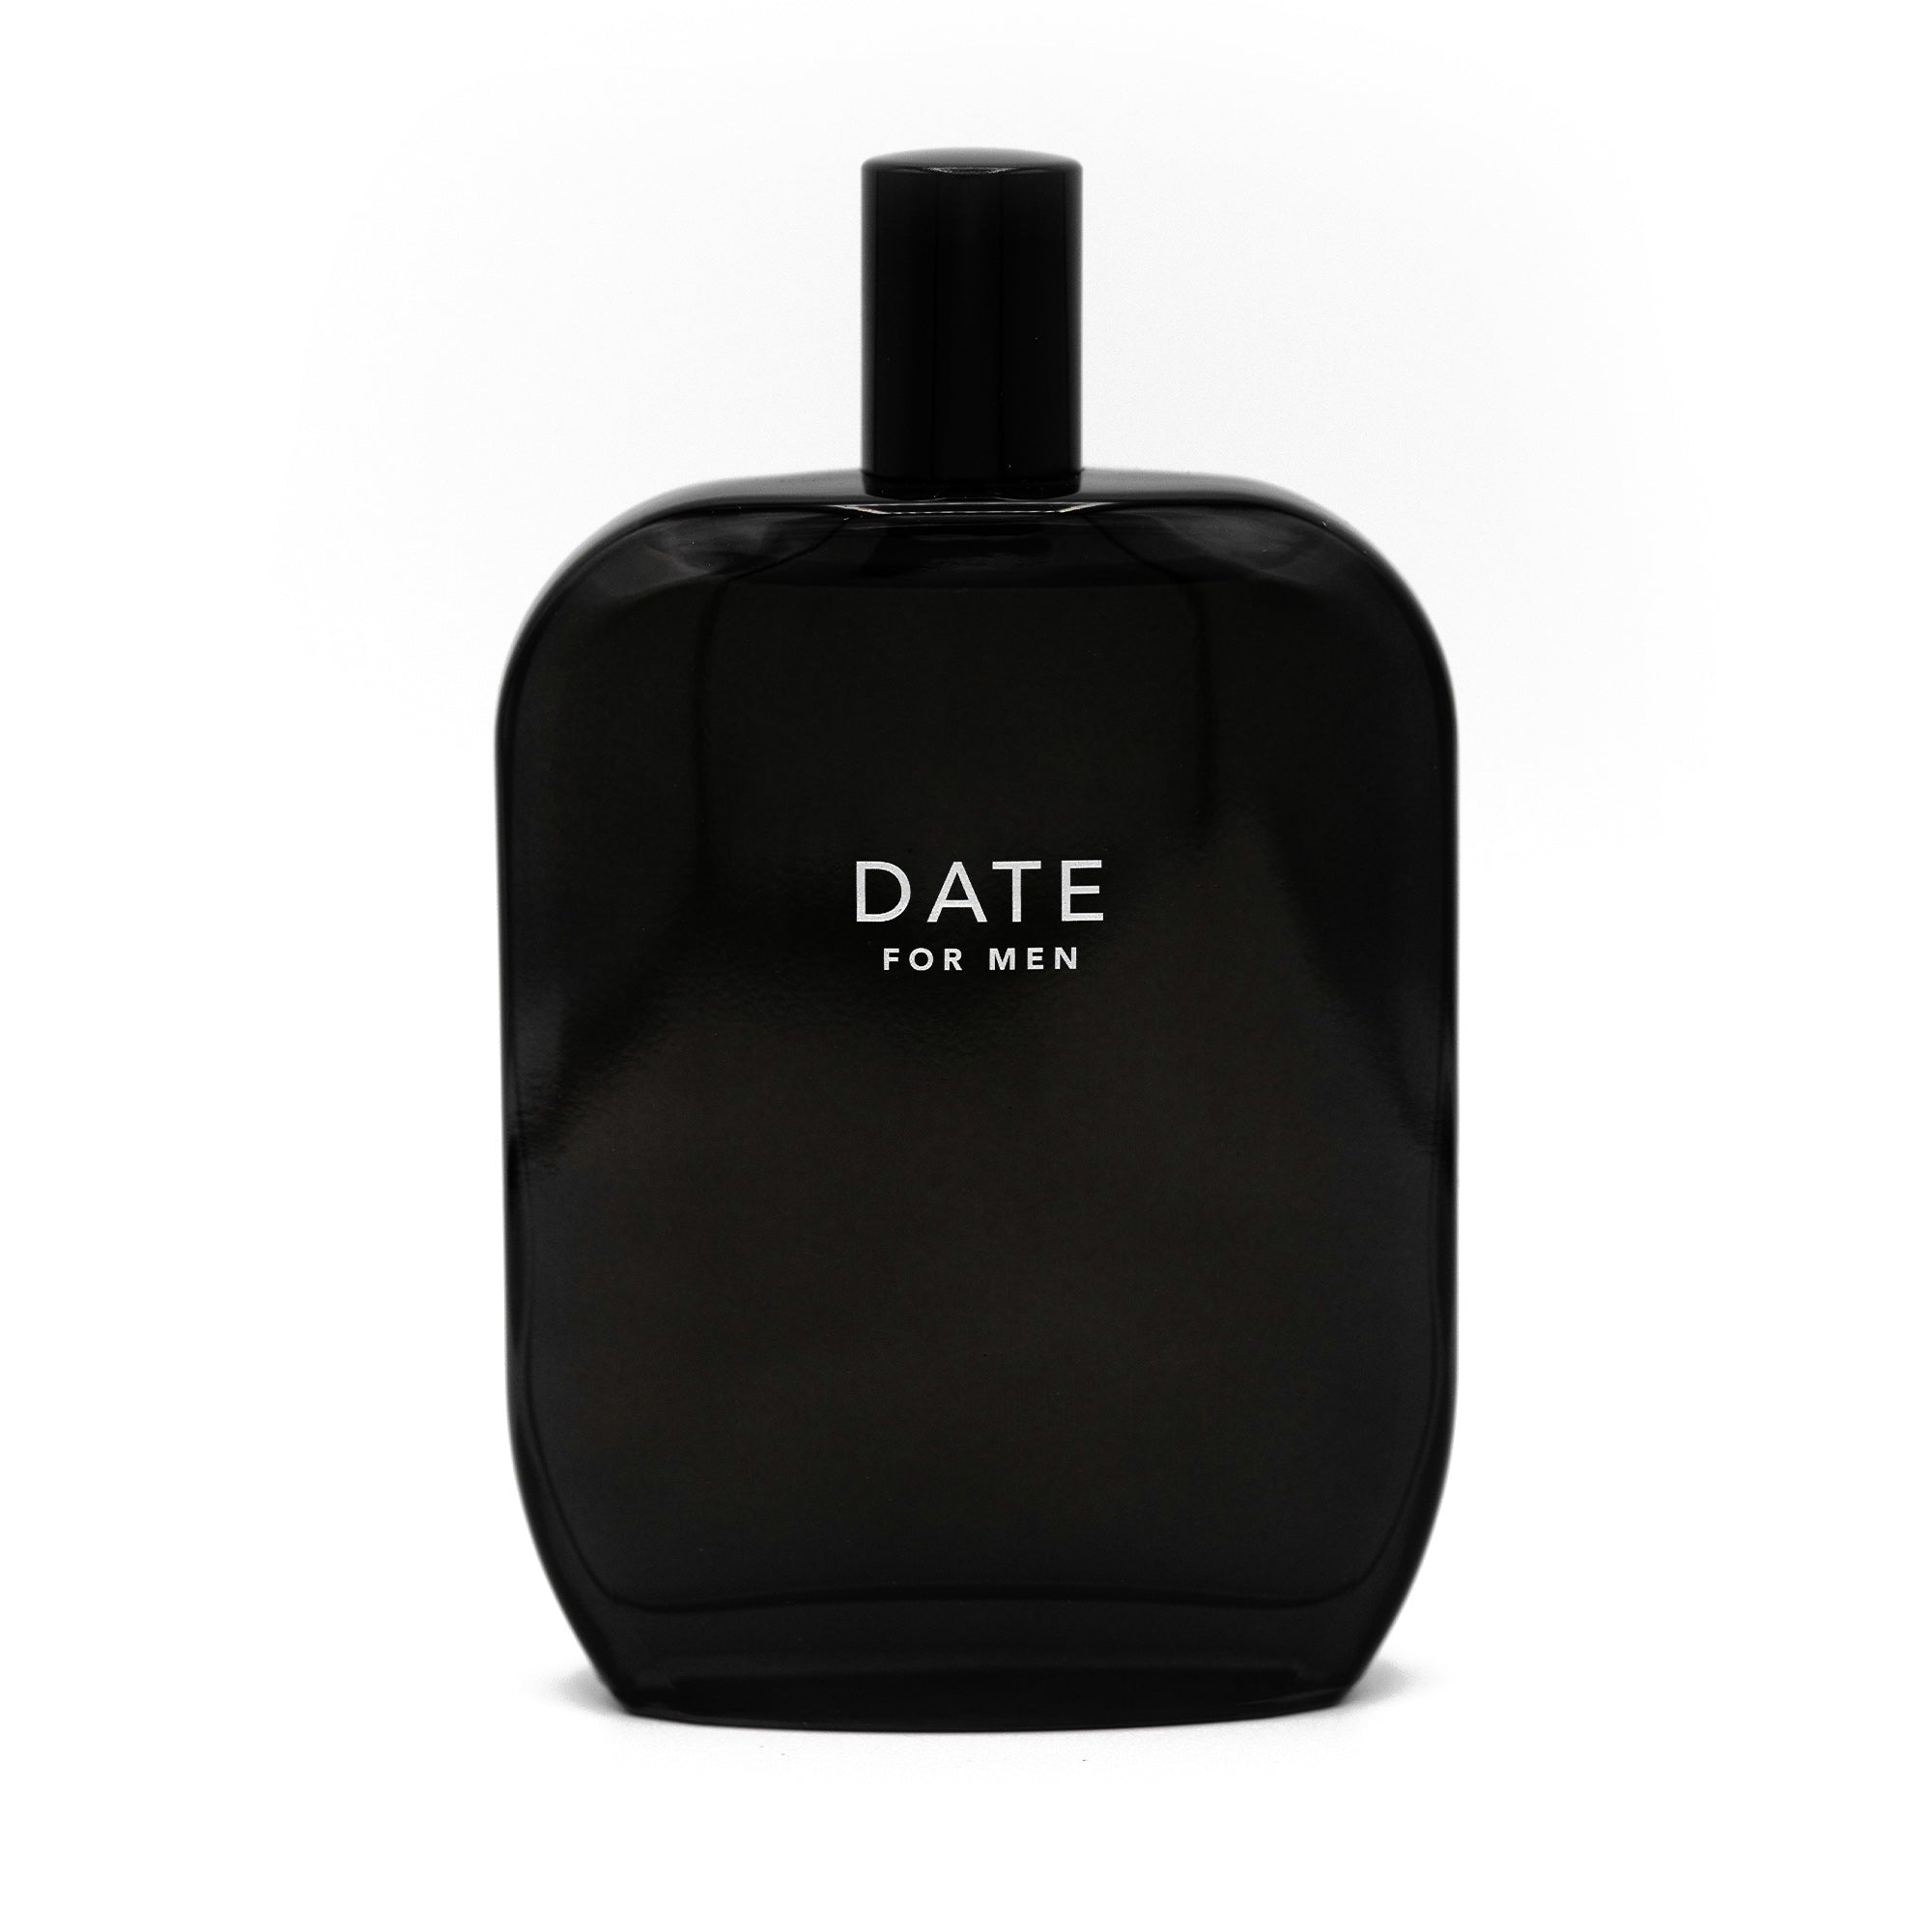 DATE for Men fragrance bottle 100ml closed cap